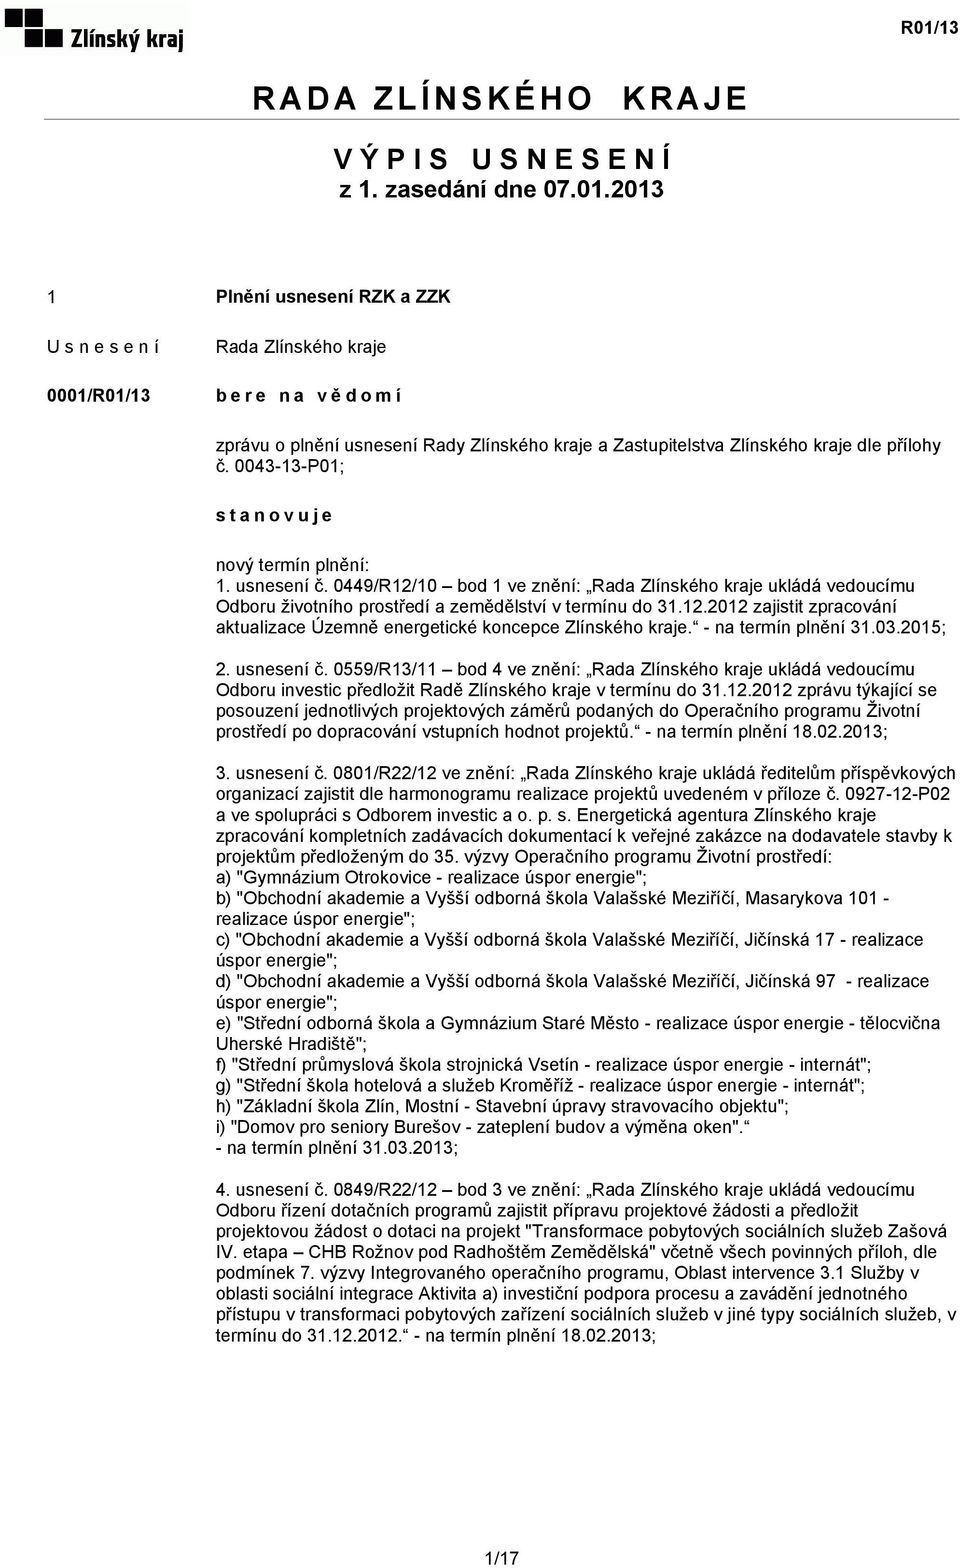 0449/R12/10 bod 1 ve znění: ukládá vedoucímu Odboru životního prostředí a zemědělství v termínu do 31.12.2012 zajistit zpracování aktualizace Územně energetické koncepce Zlínského kraje.